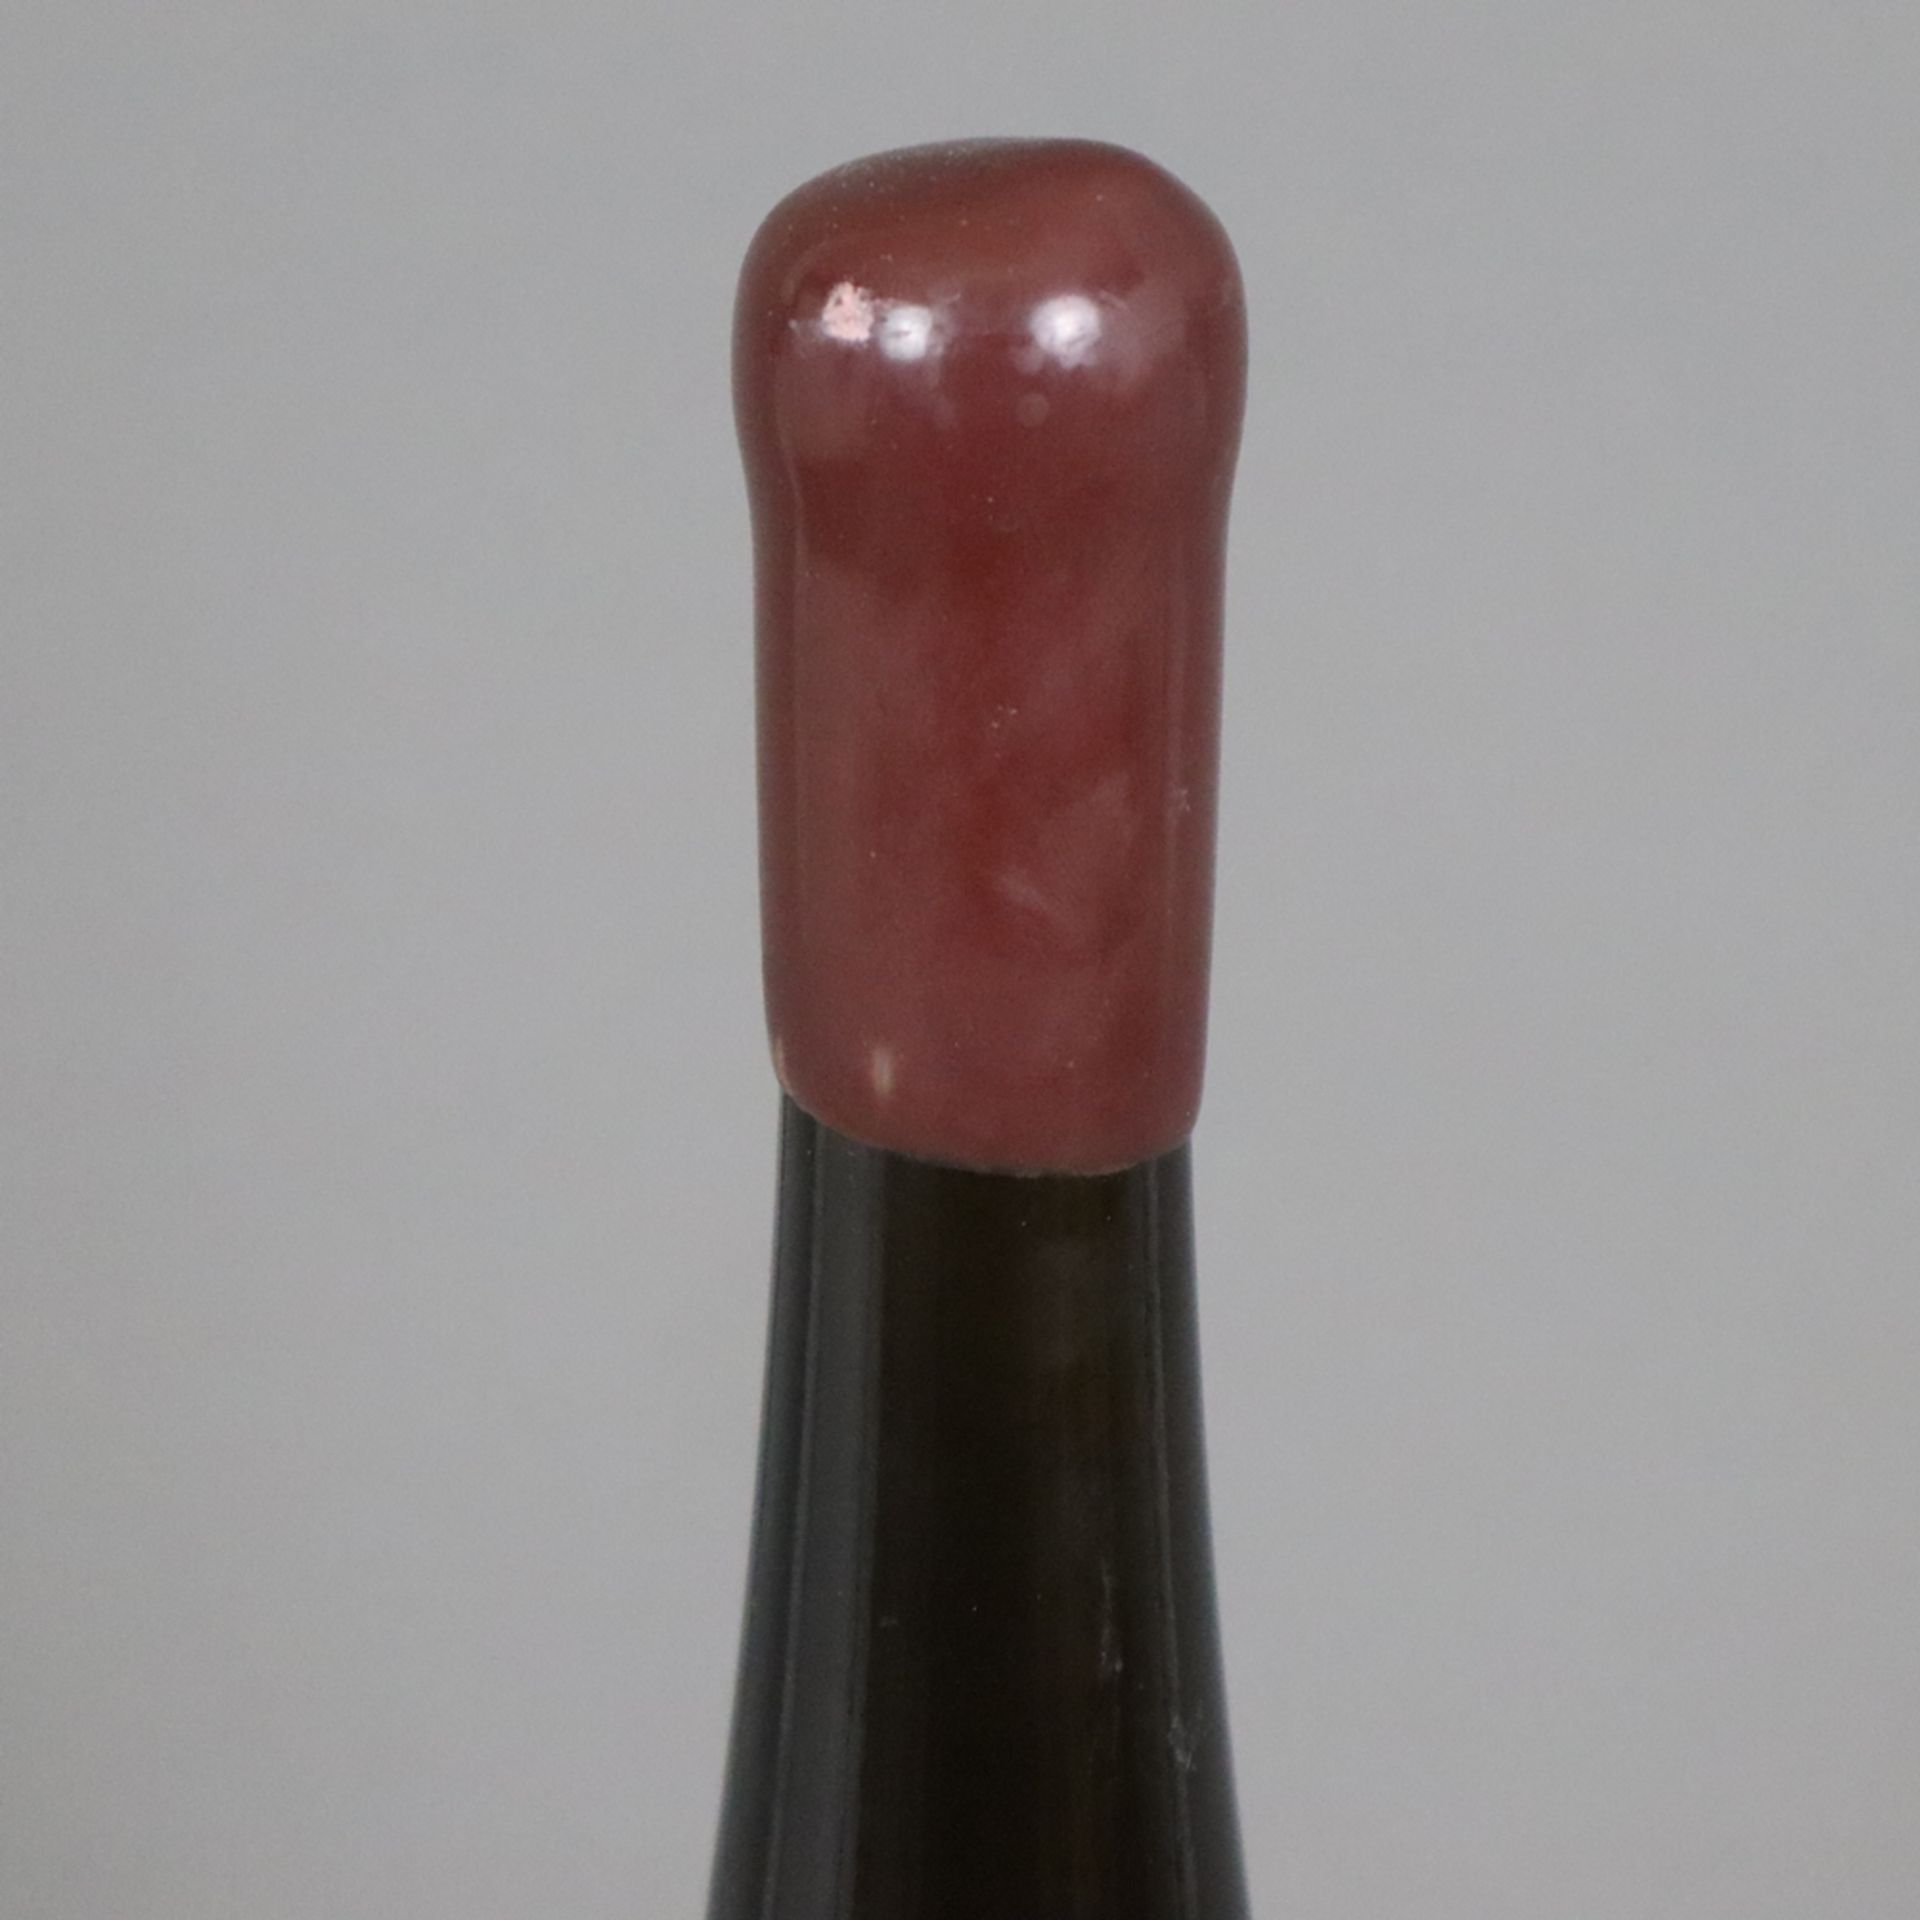 Wein - 2010 „RESSpekt“ Rheingau Riesling, 1,5 l Magnum, Füllstand: High Fill, Flasche 76/120, mit W - Bild 2 aus 6